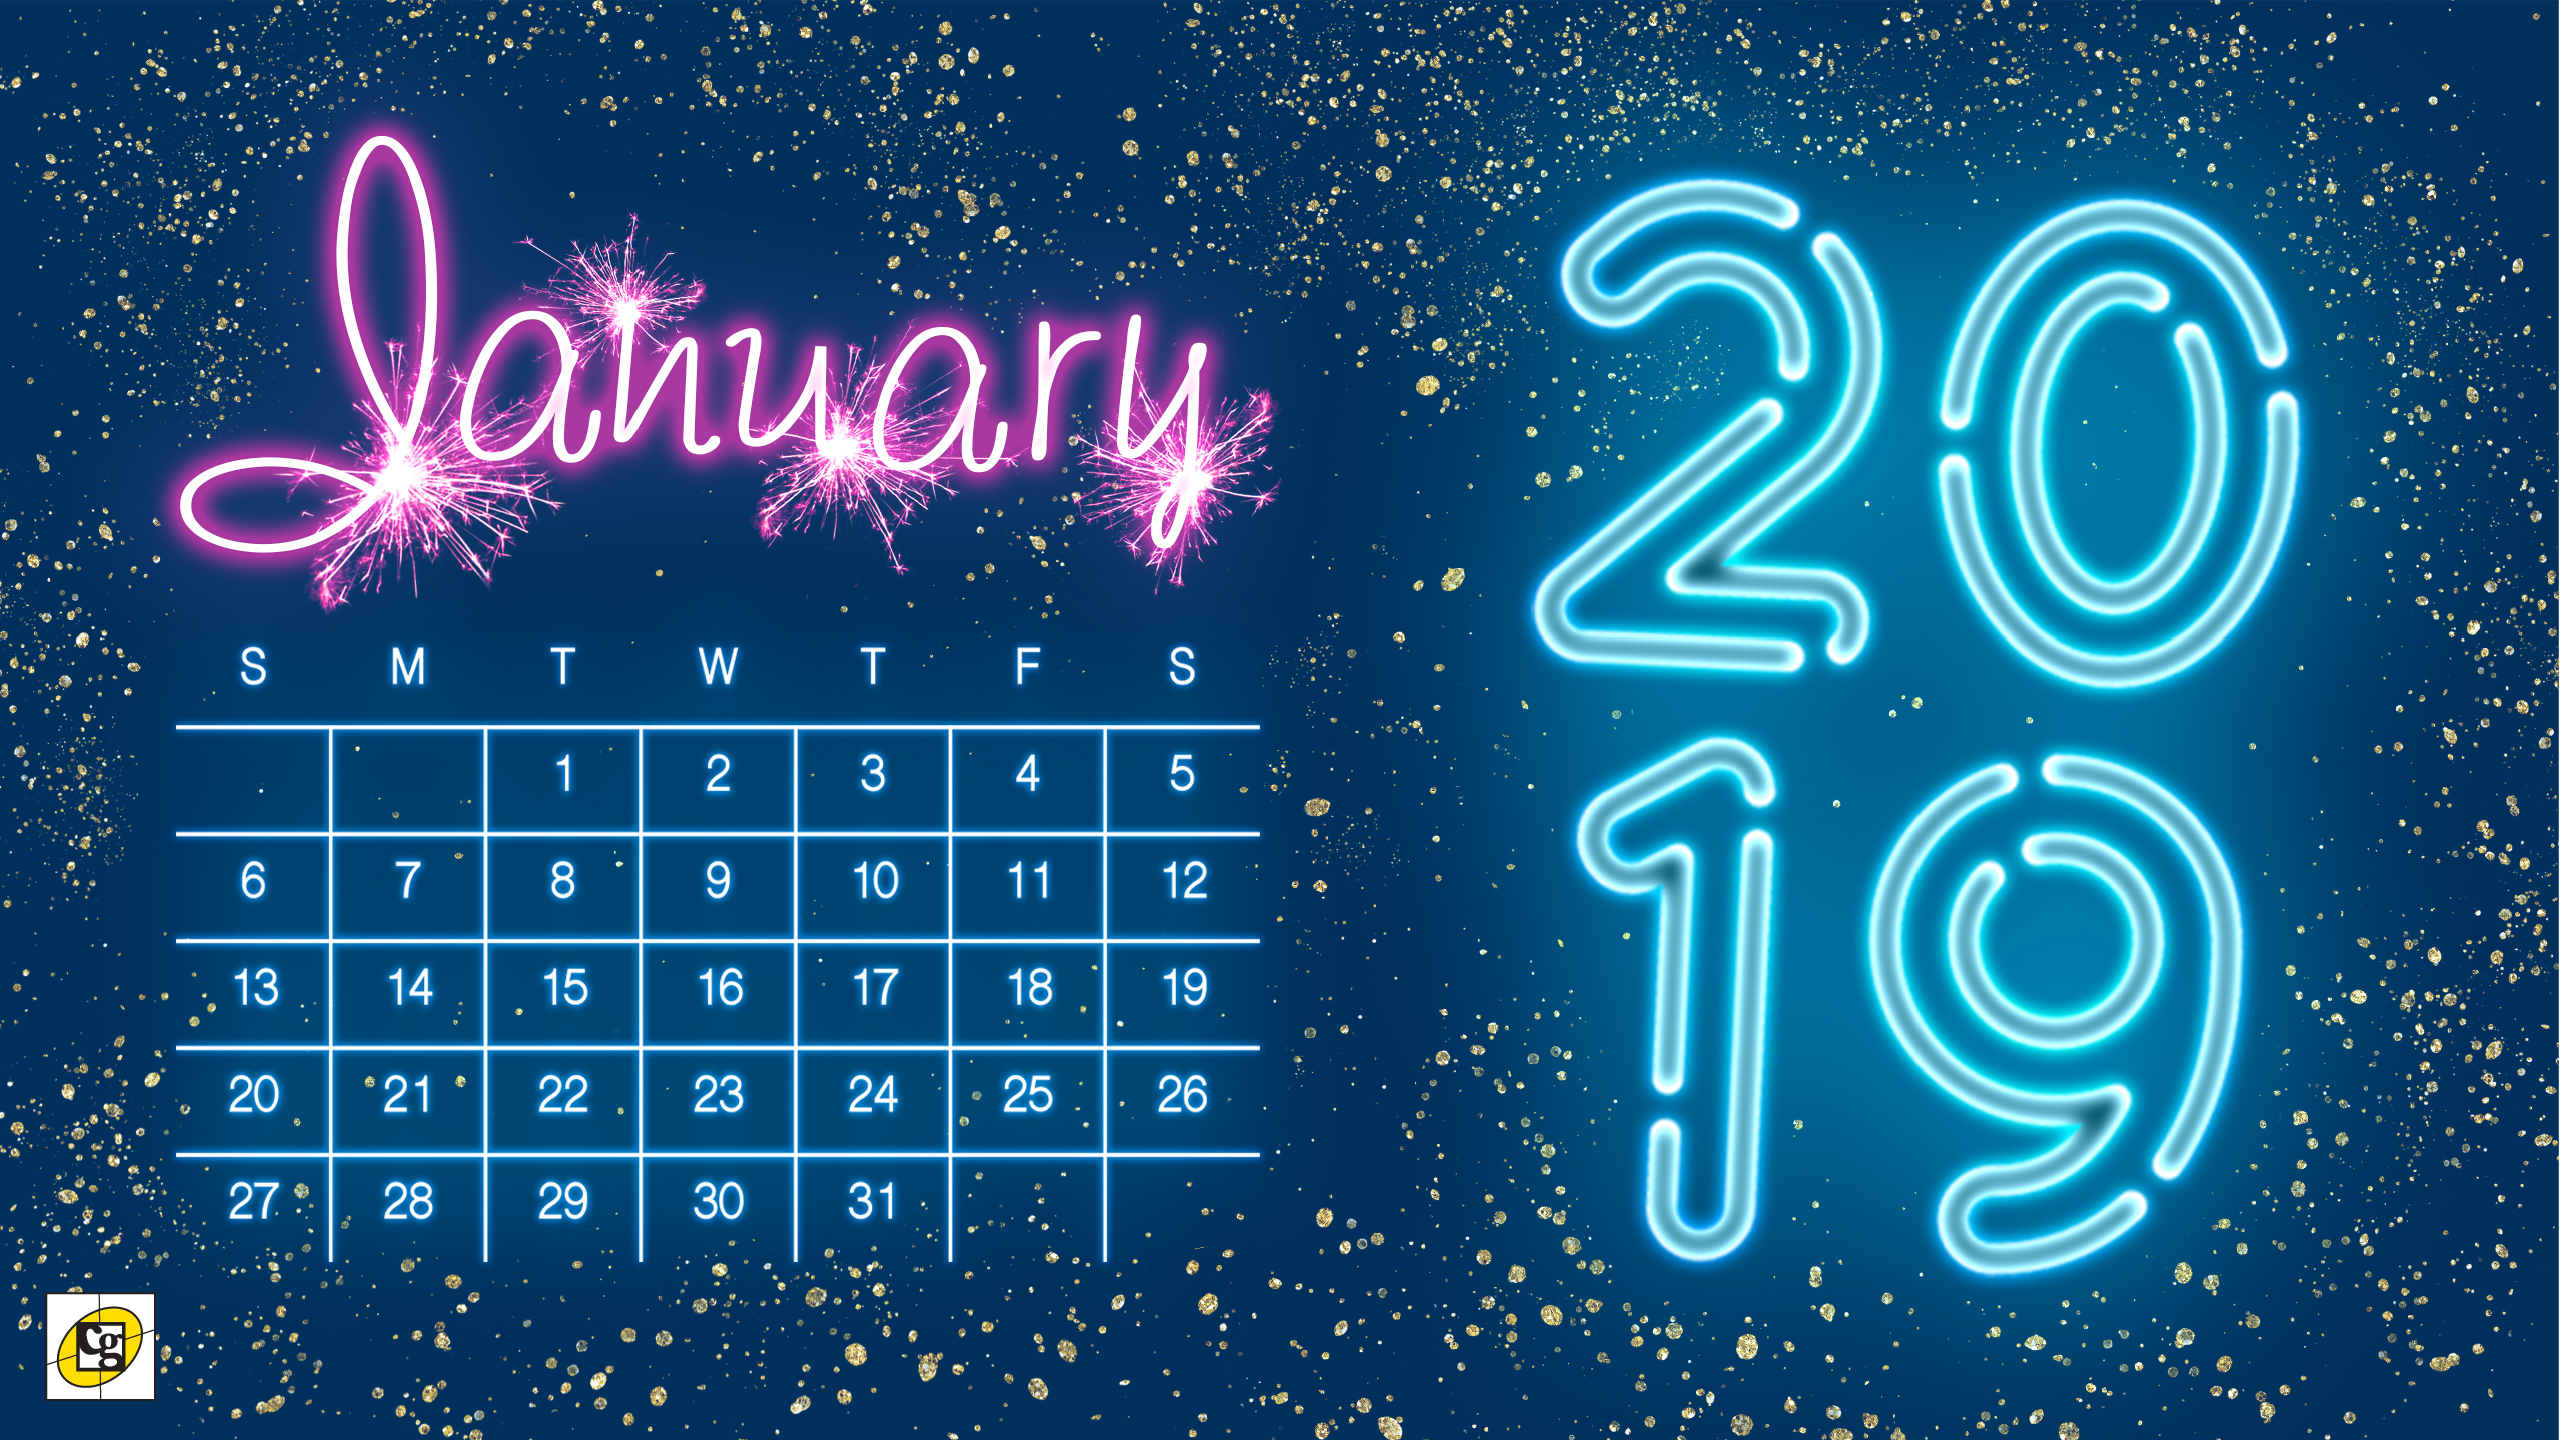 Print January 2019 Calendar Cute